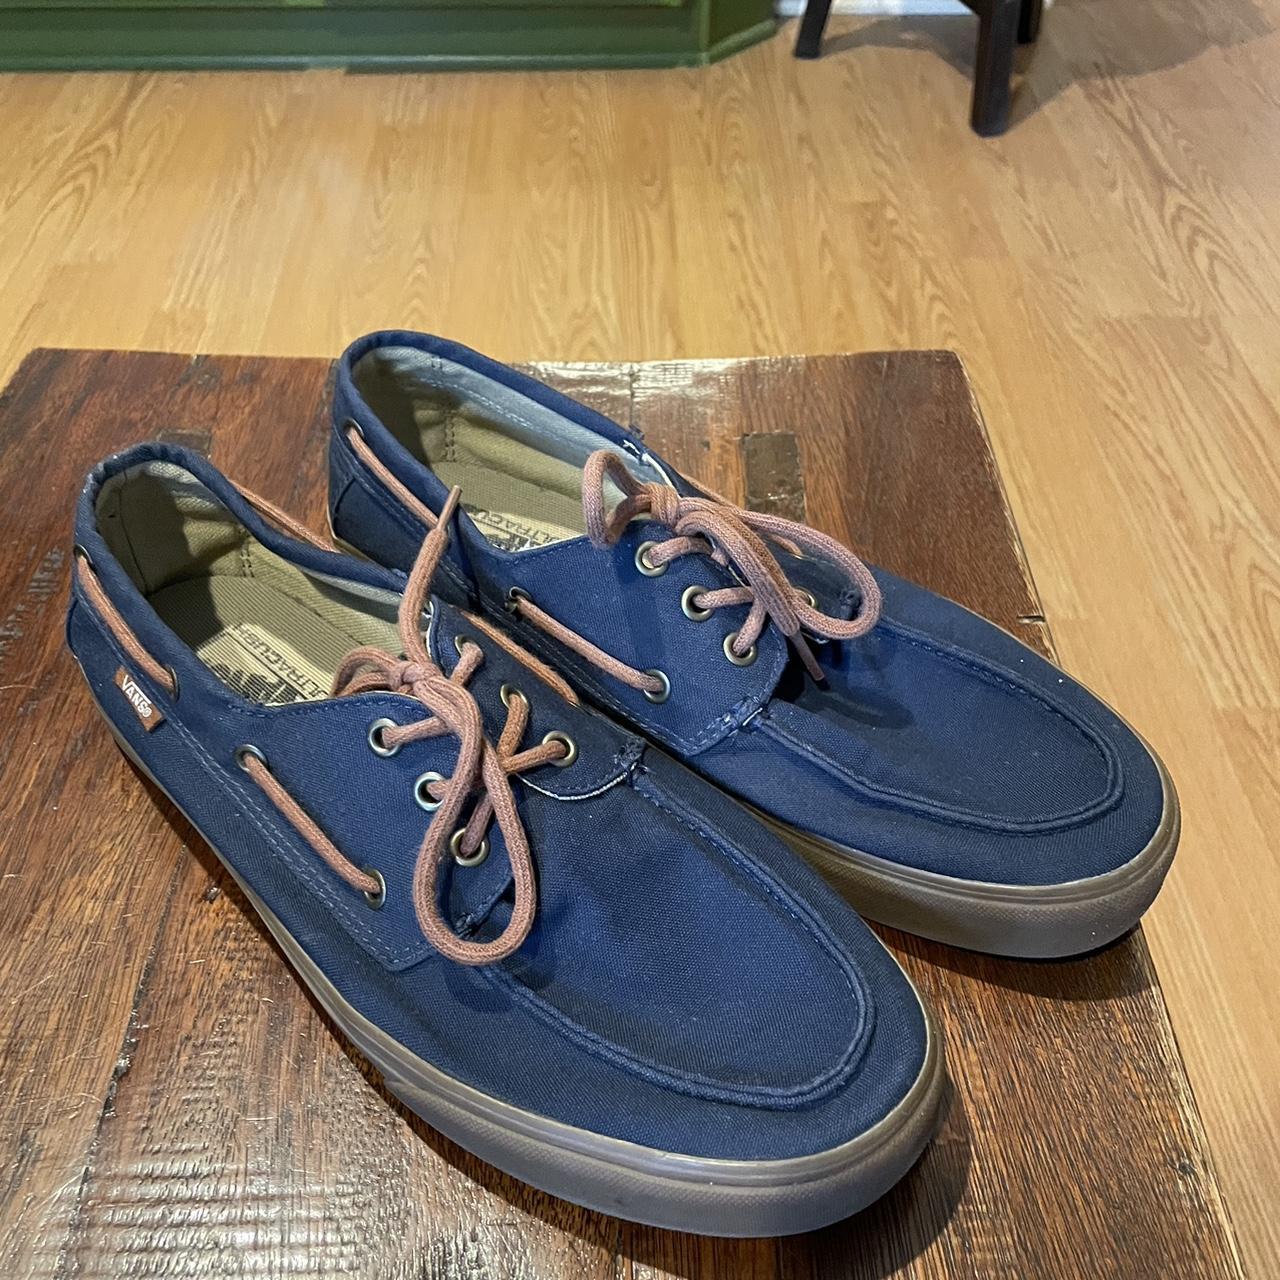 Vans Men's Navy and Brown Boat-shoes | Depop